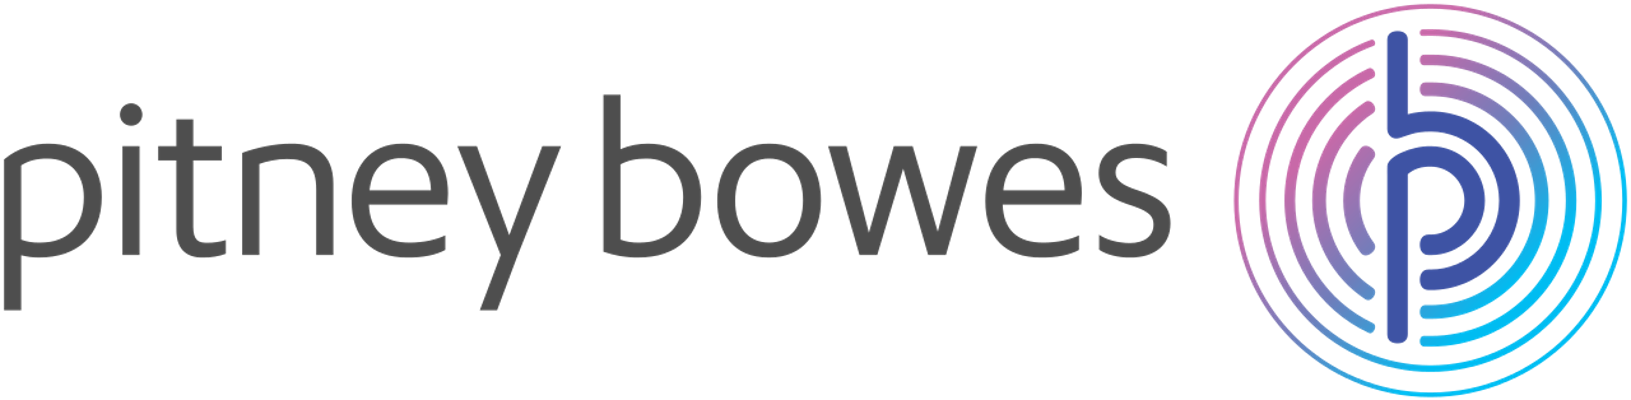 Pitney_Bowes_logo-1